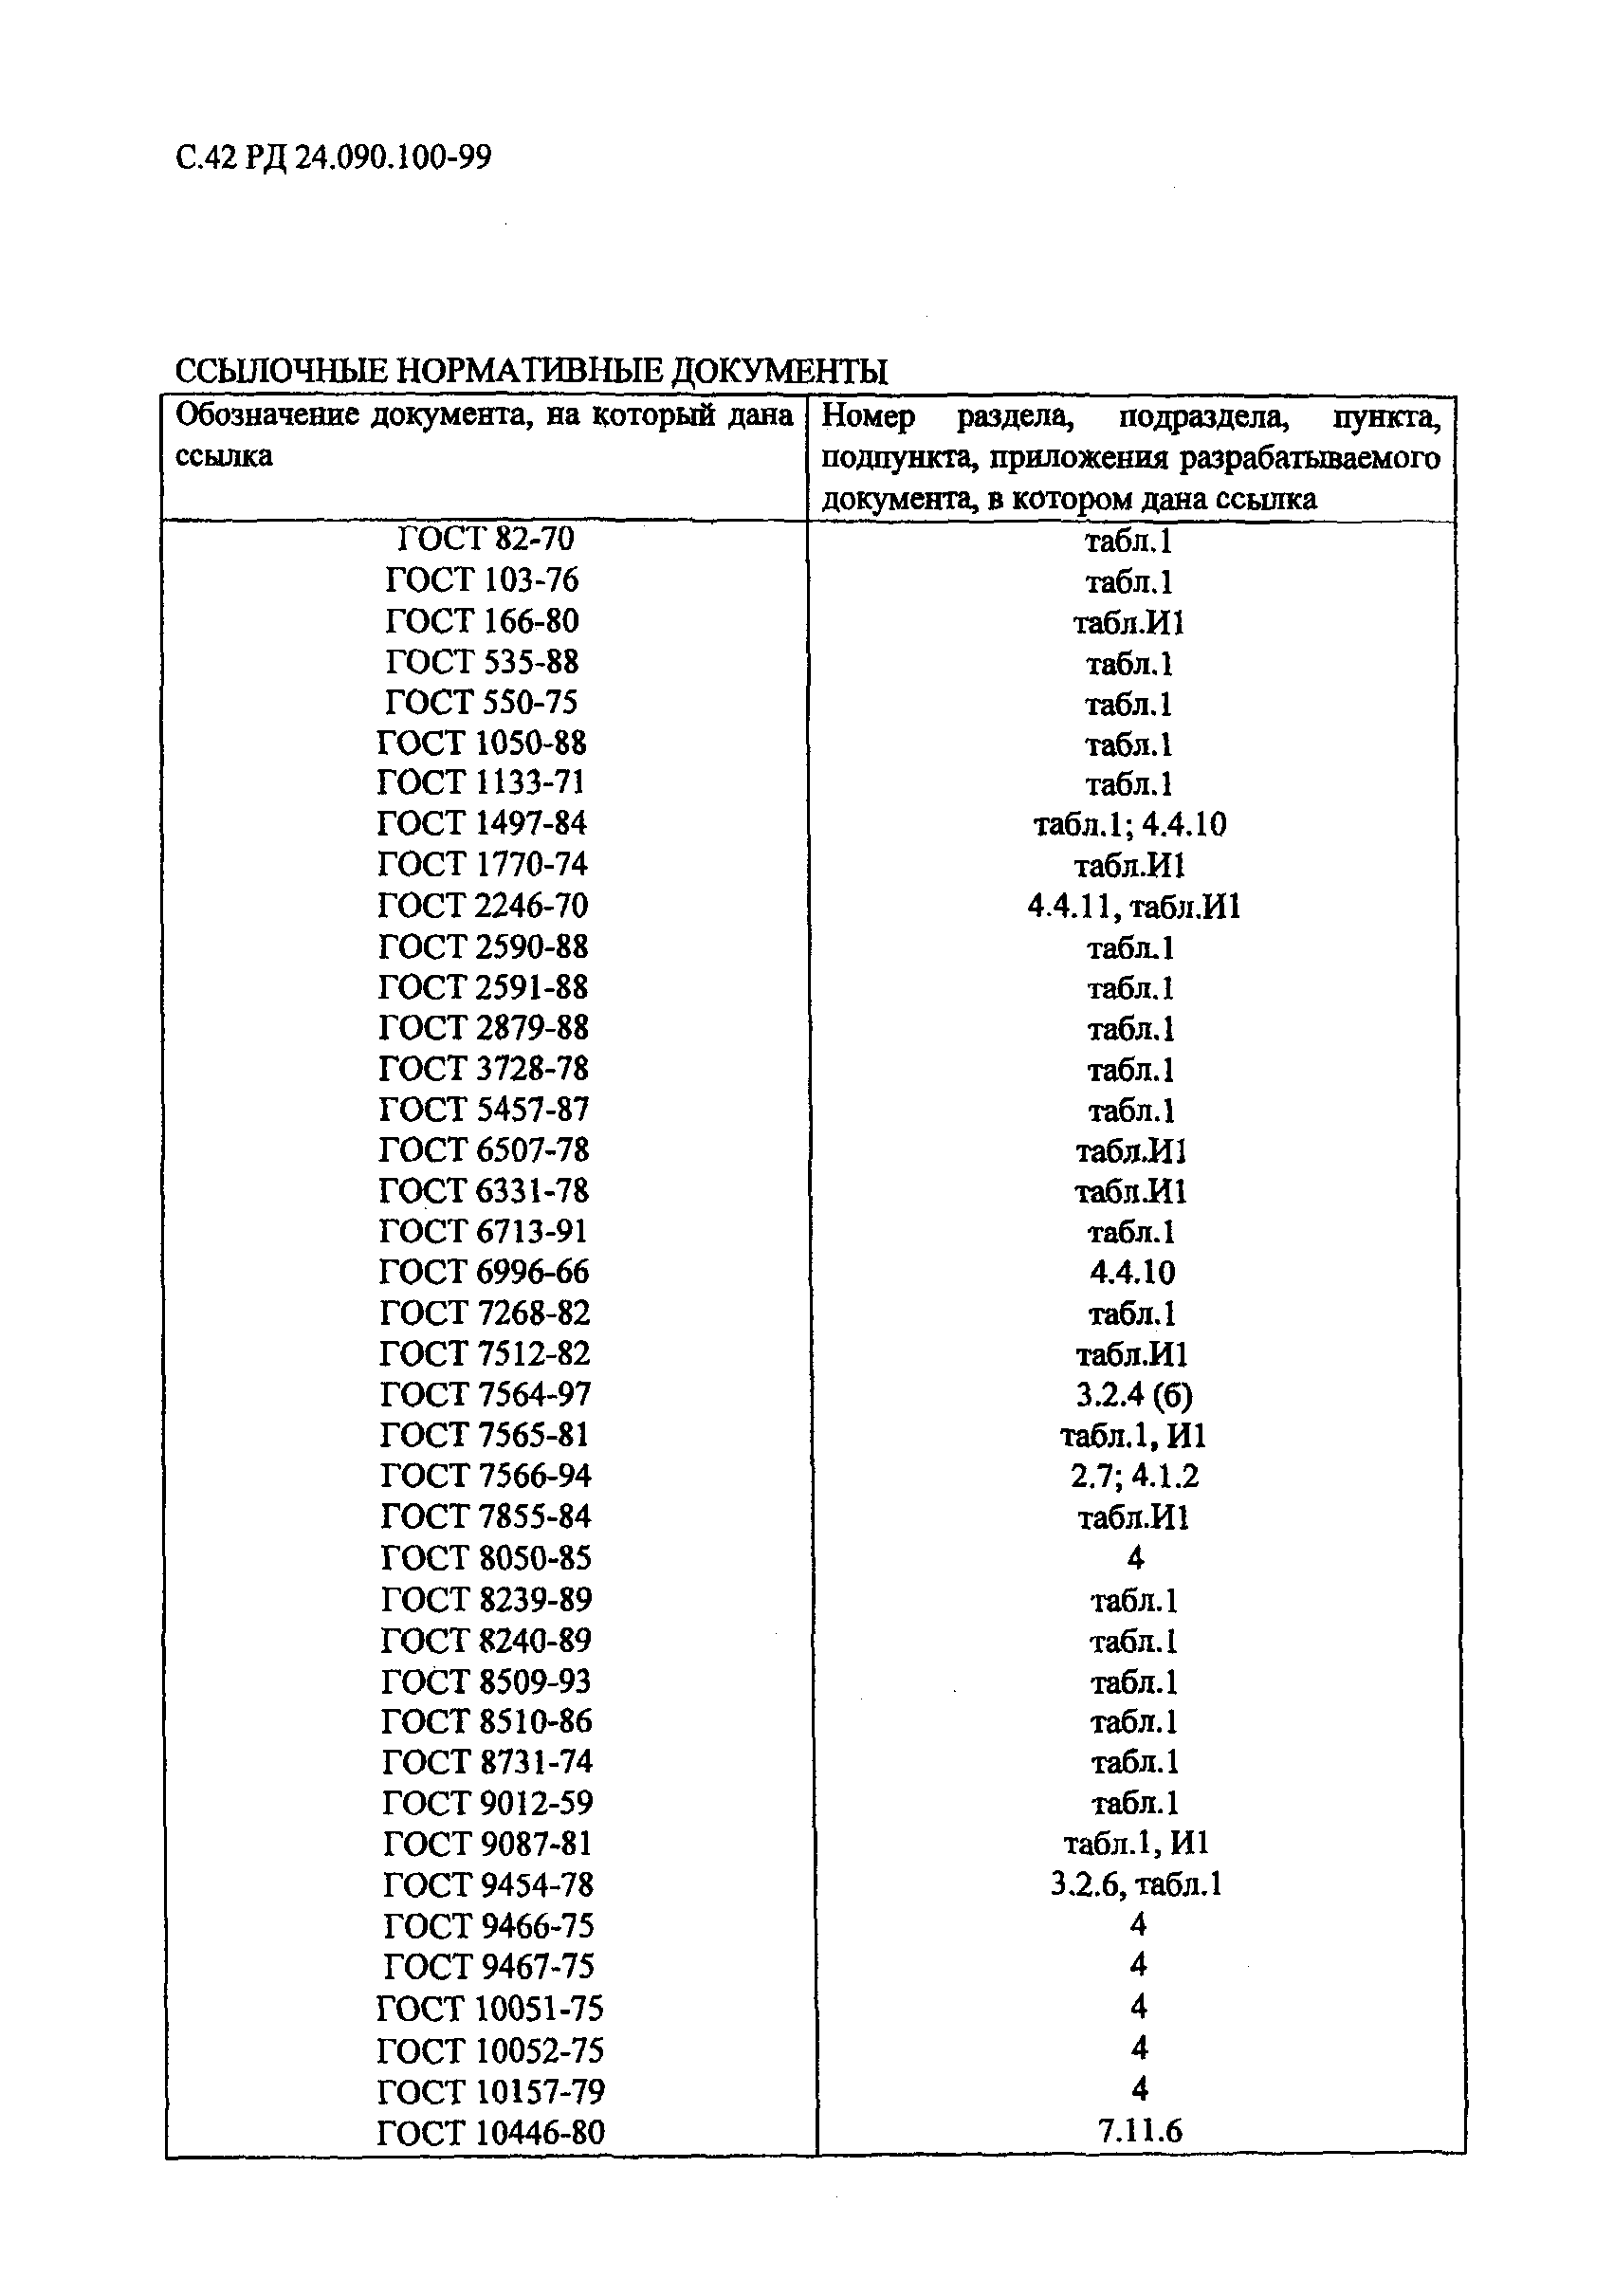 РД 24.090.100-99